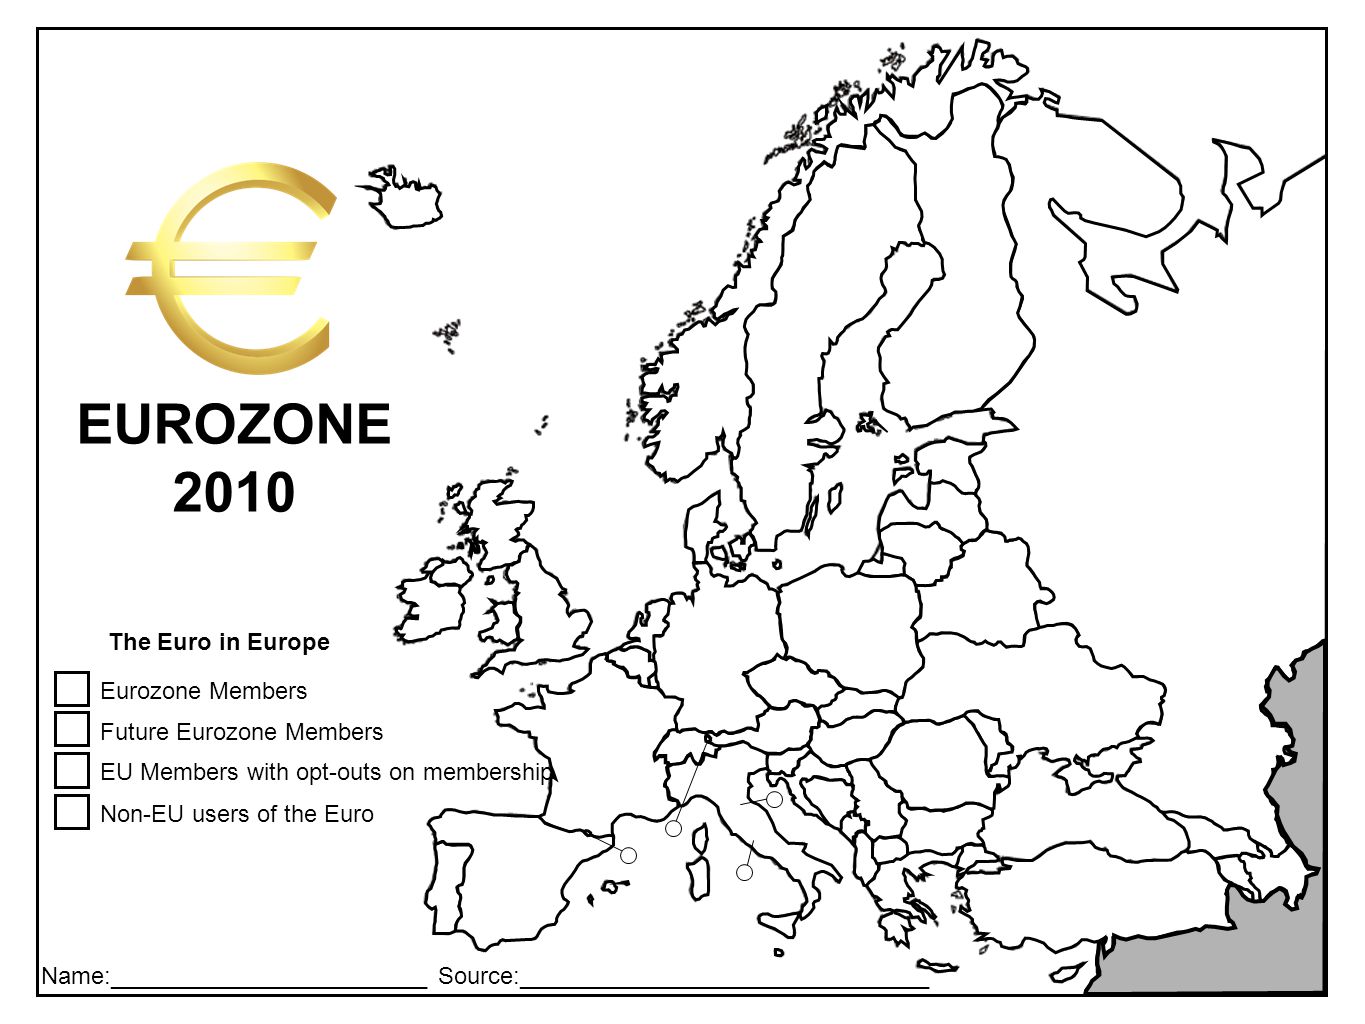 Name:________________________ Source:_______________________________ EUROZONE 2010 Eurozone Members Future Eurozone Members EU Members with opt-outs on membership Non-EU users of the Euro The Euro in Europe